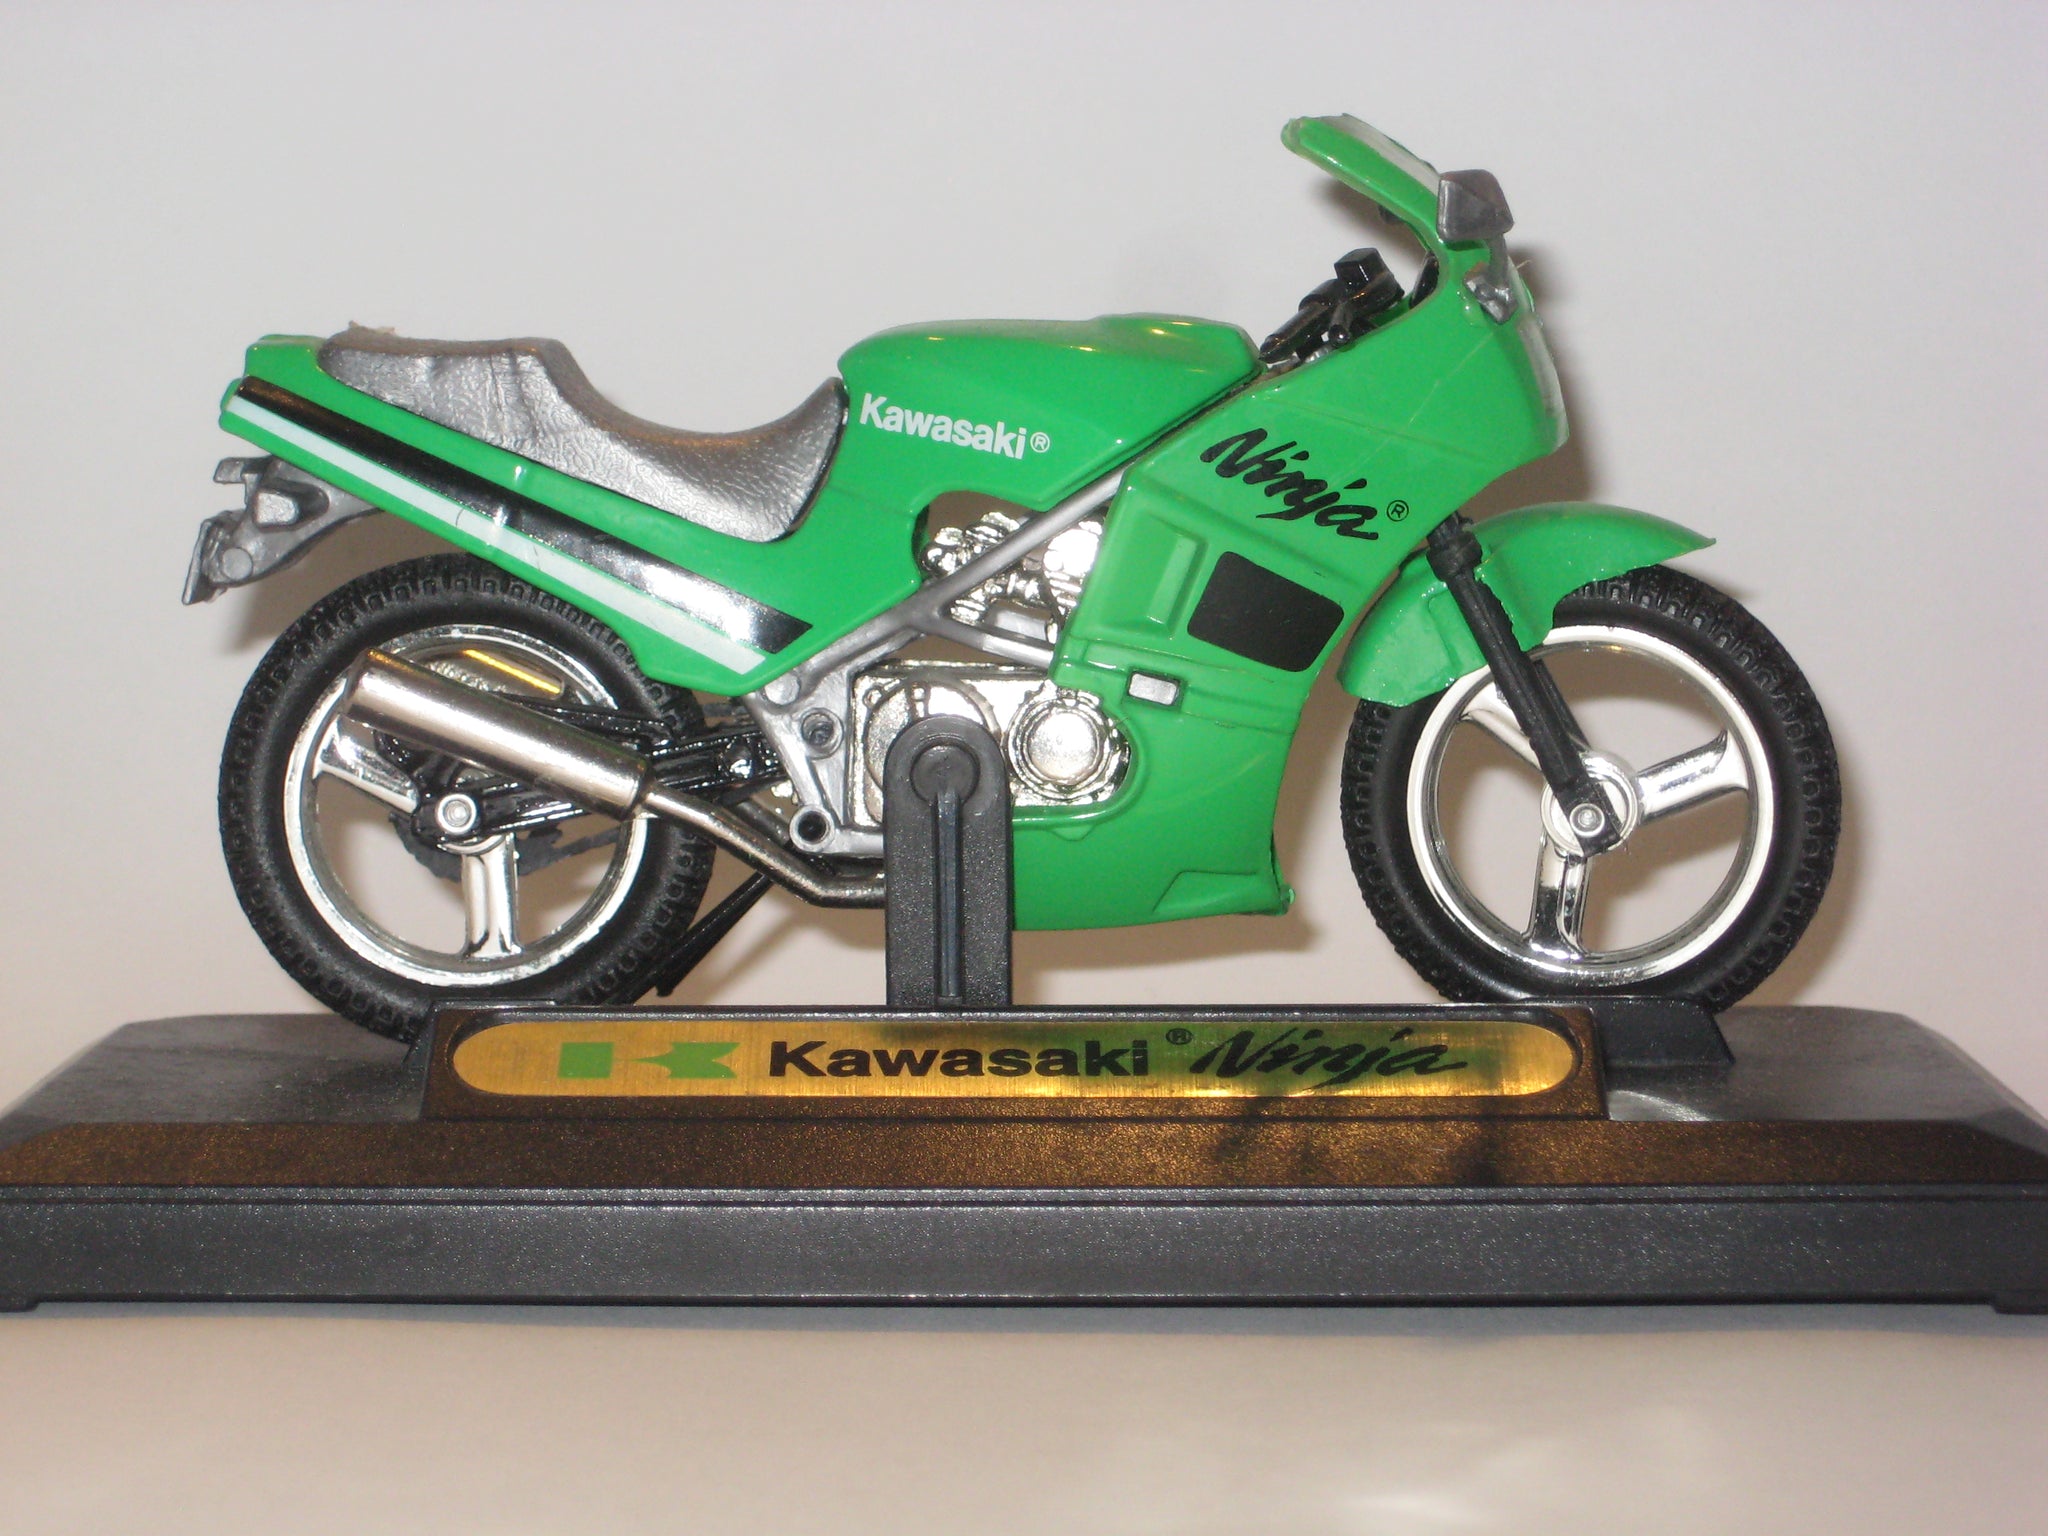 Kawasaki Ninja. Welly 1:18 modelmotorcykler.dk